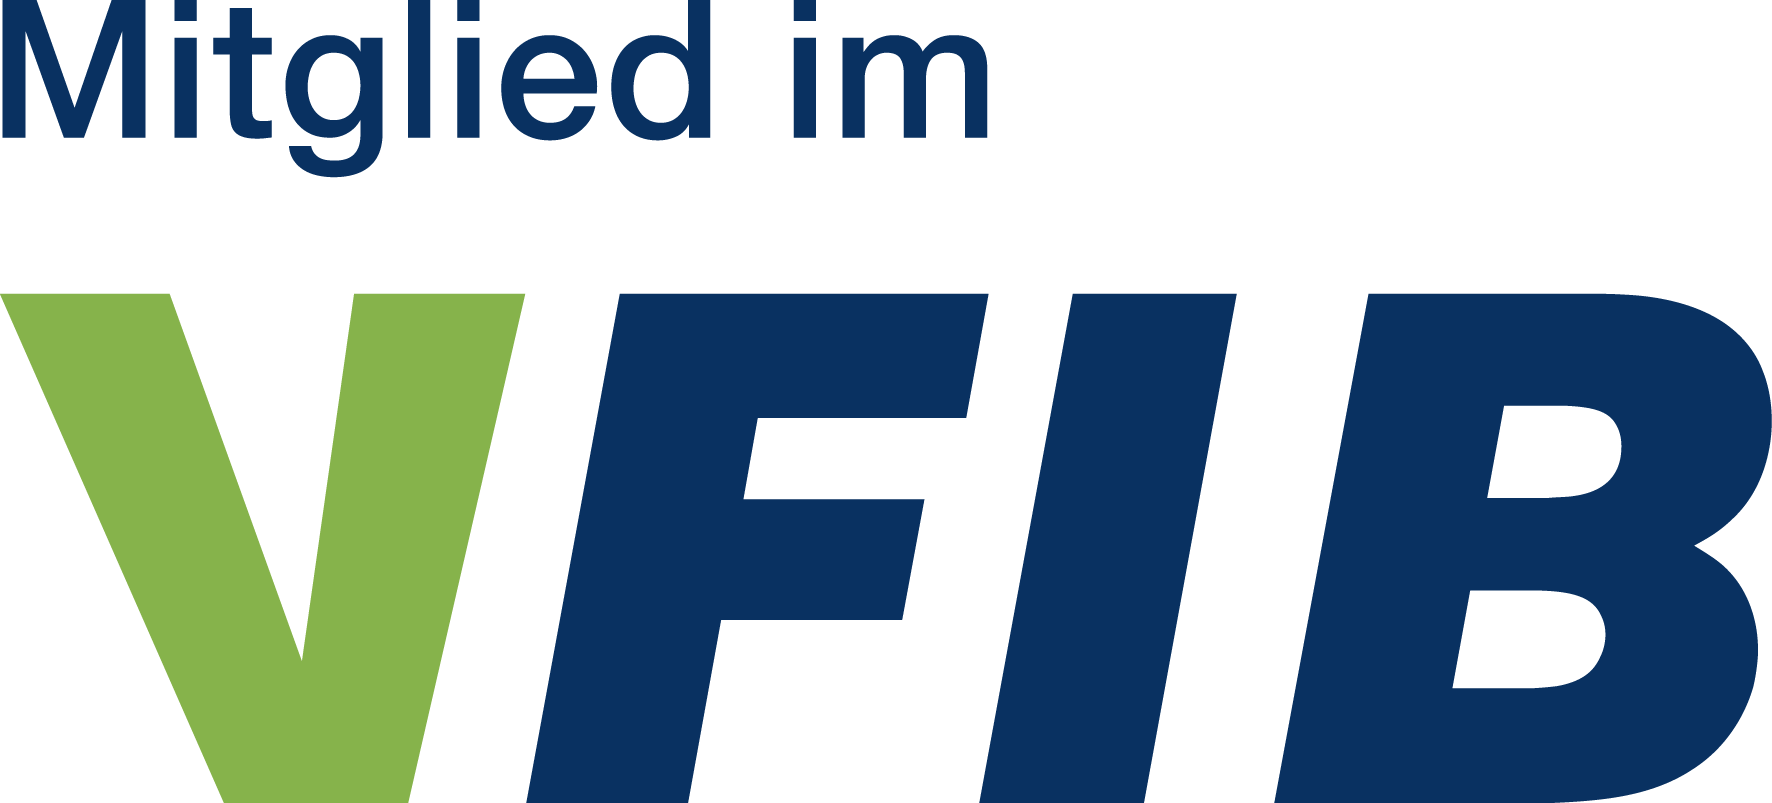 Mitglied im VFIB